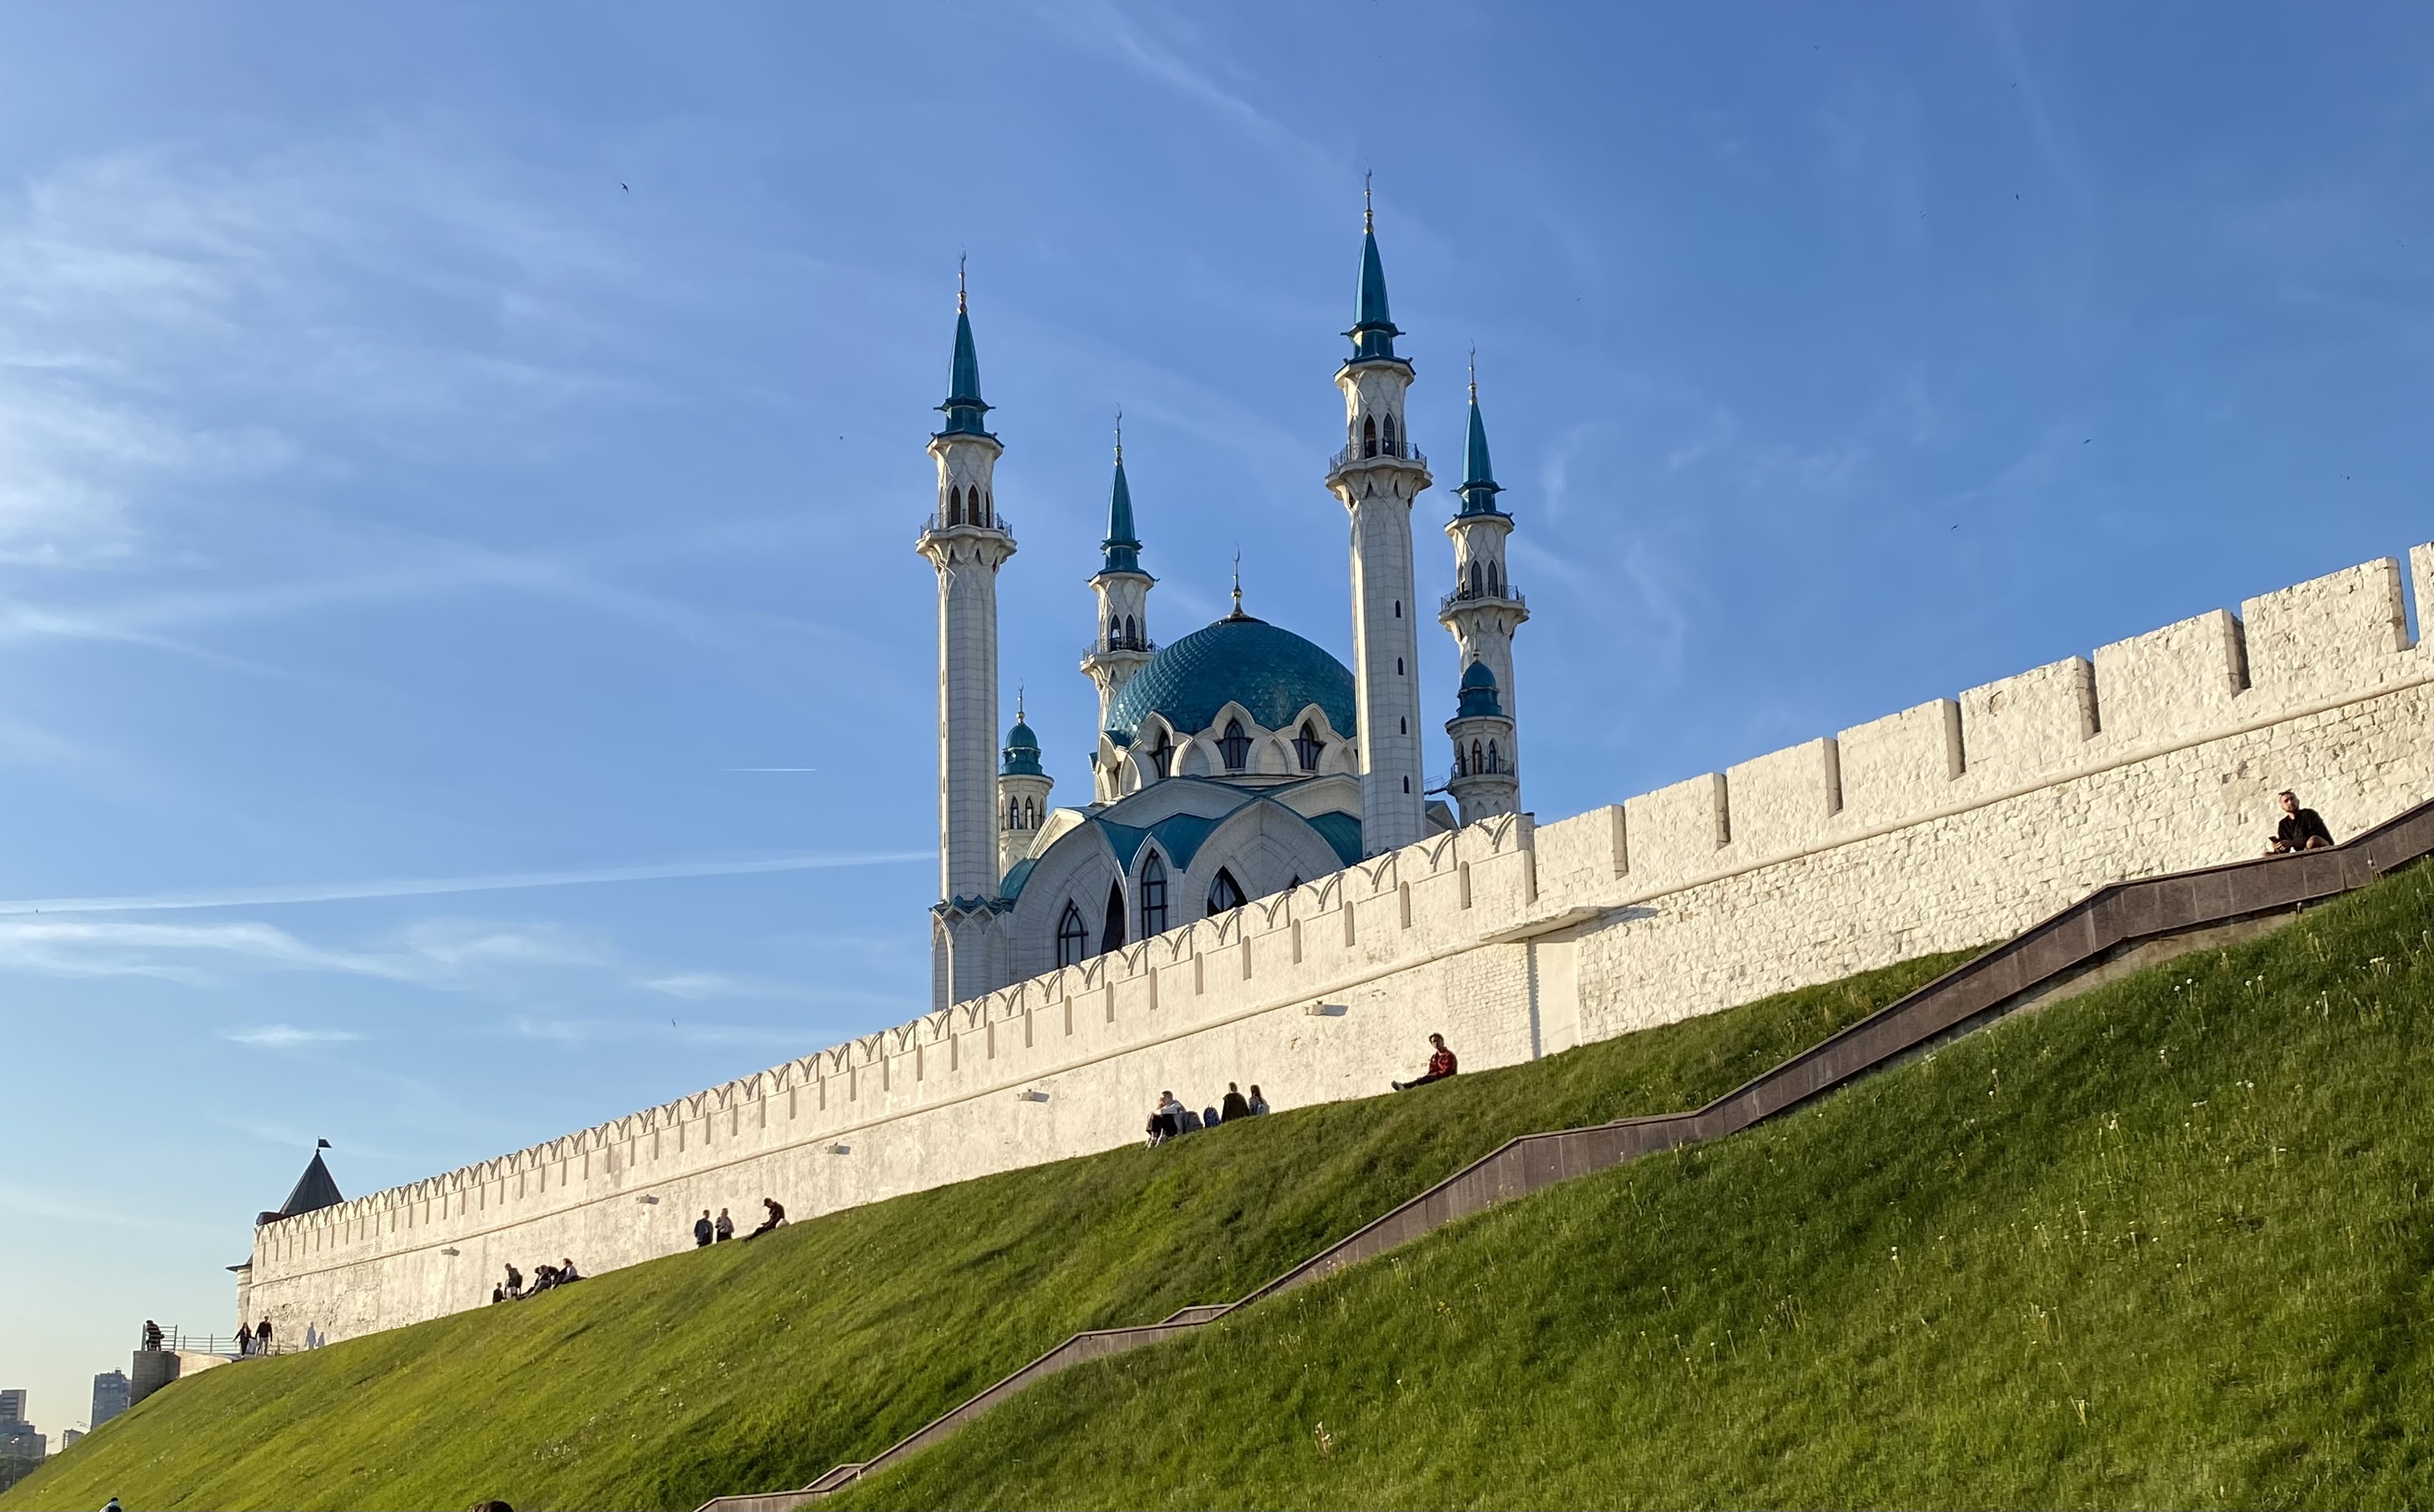  Татарстан организует три праздничных события с бюджетом 32,3 миллиона рублей   